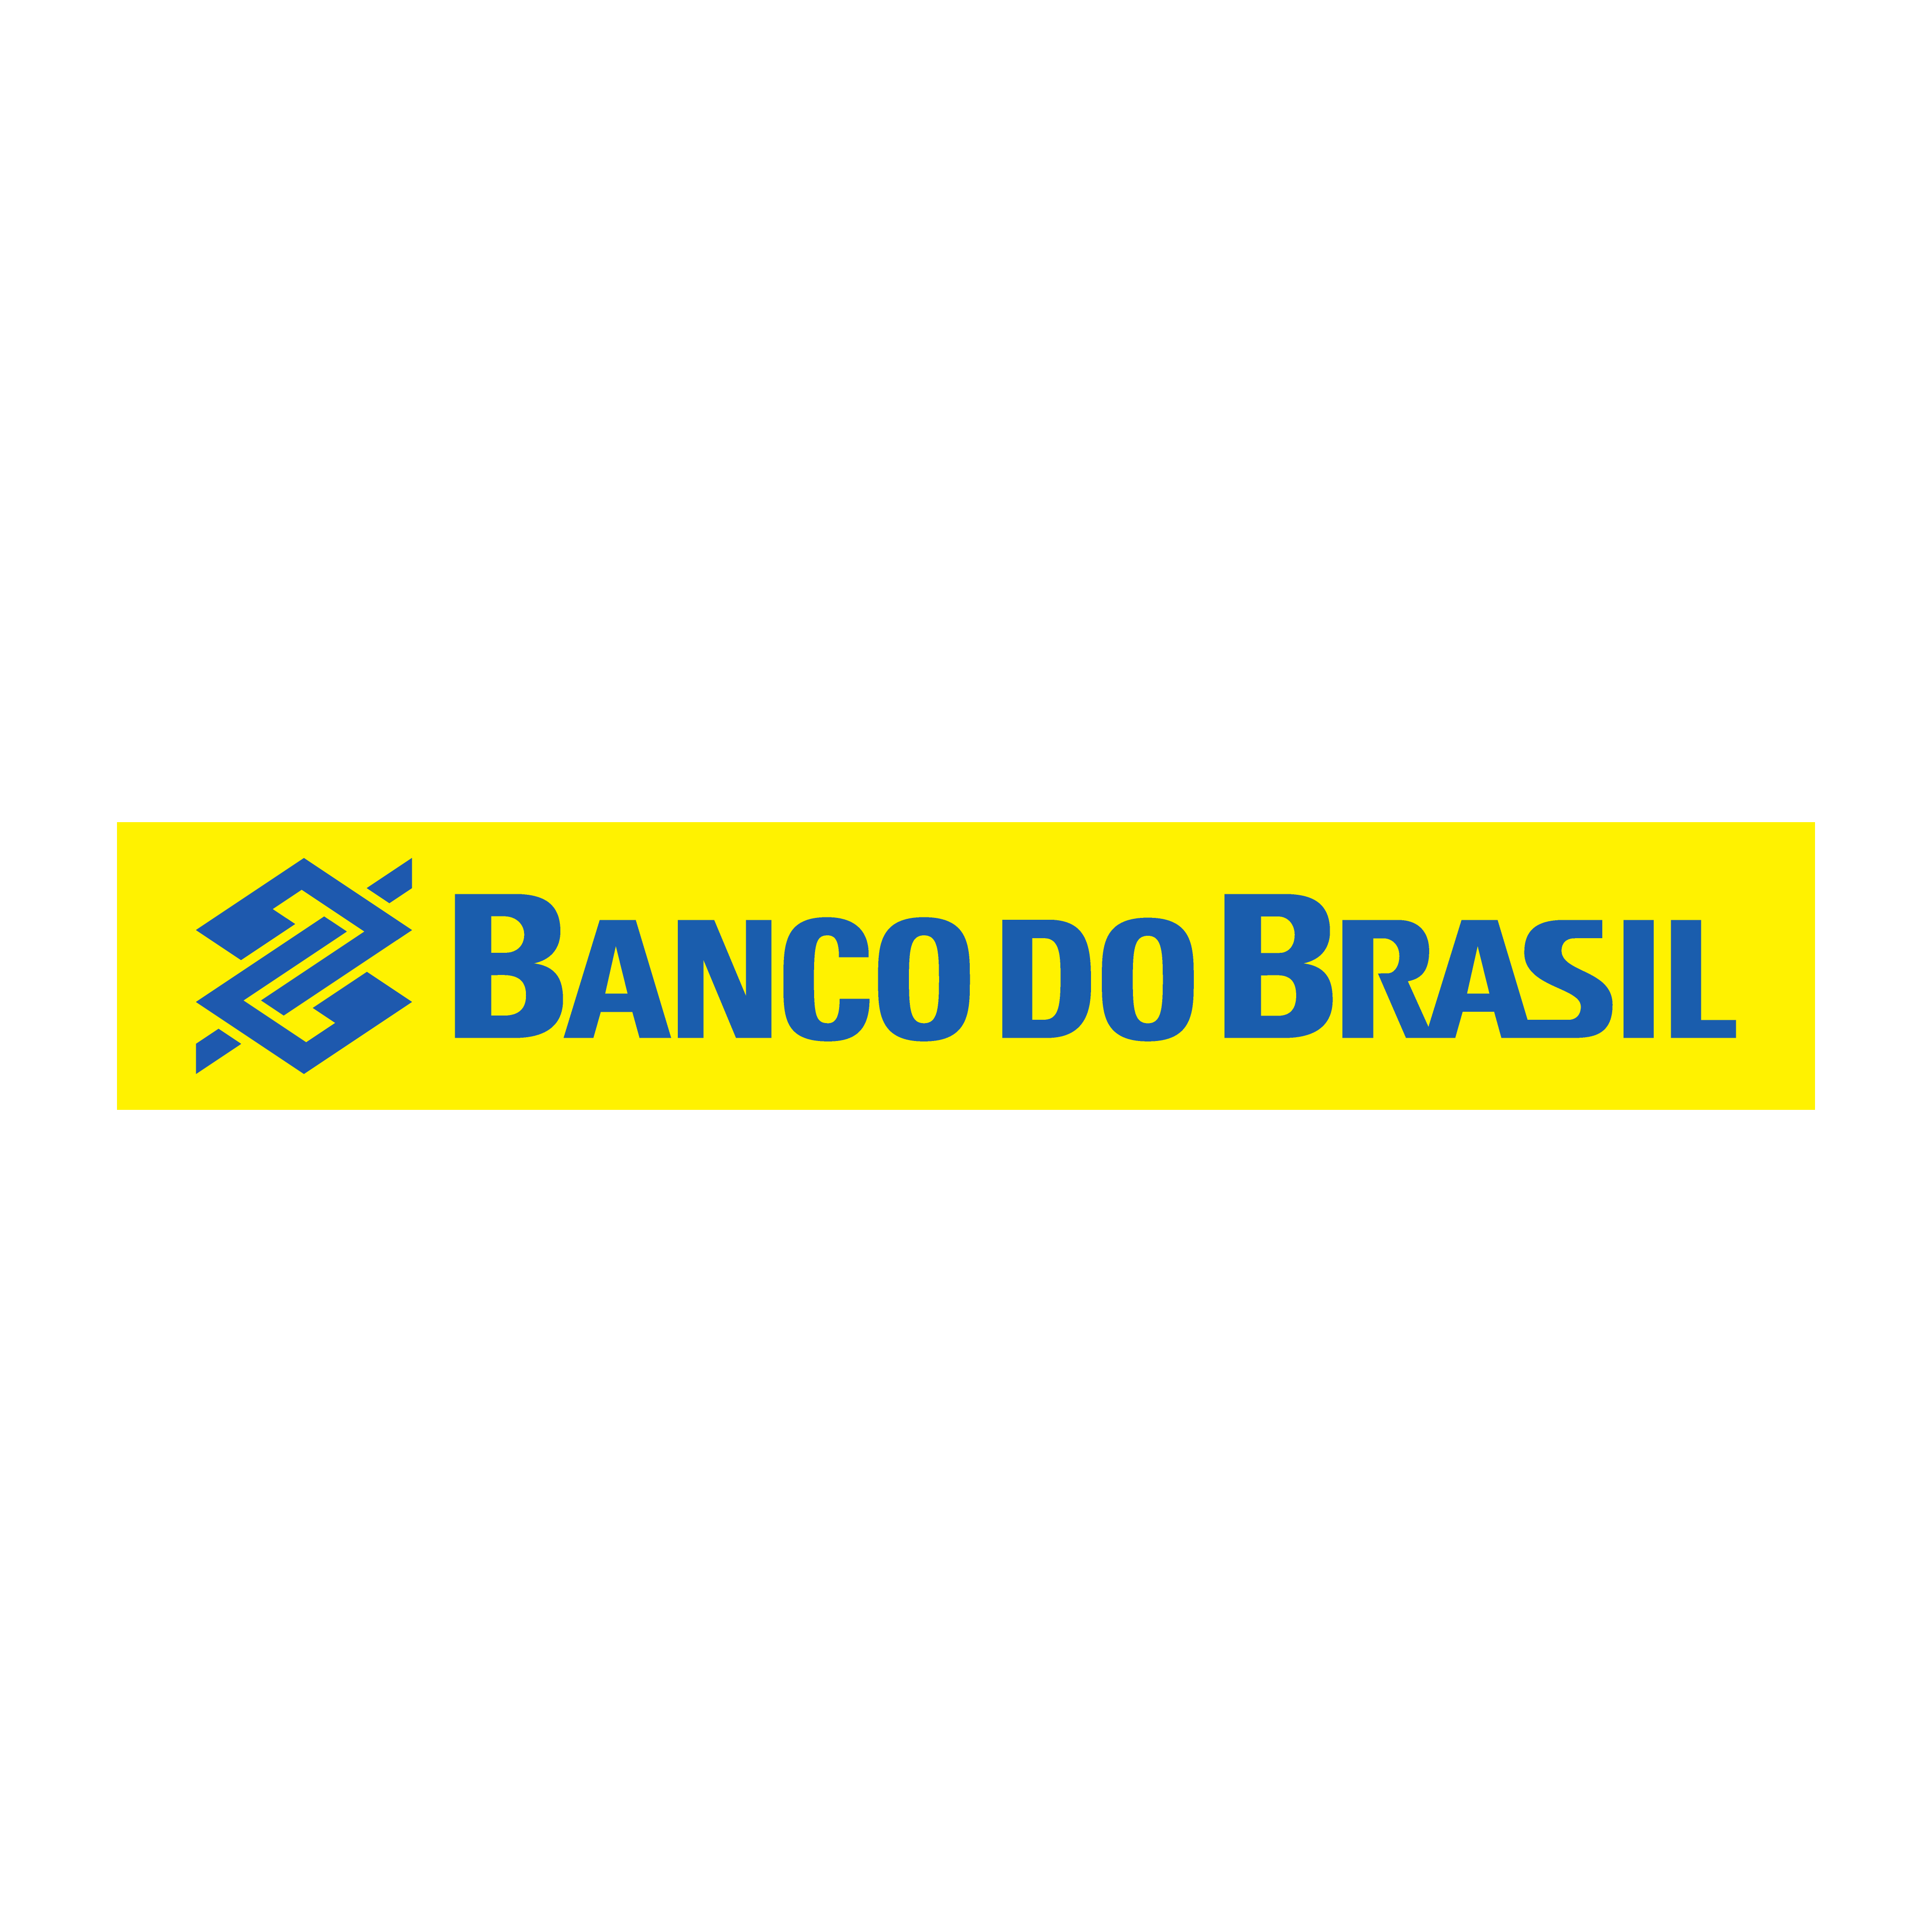 logo banco do brasil horizontal brasao